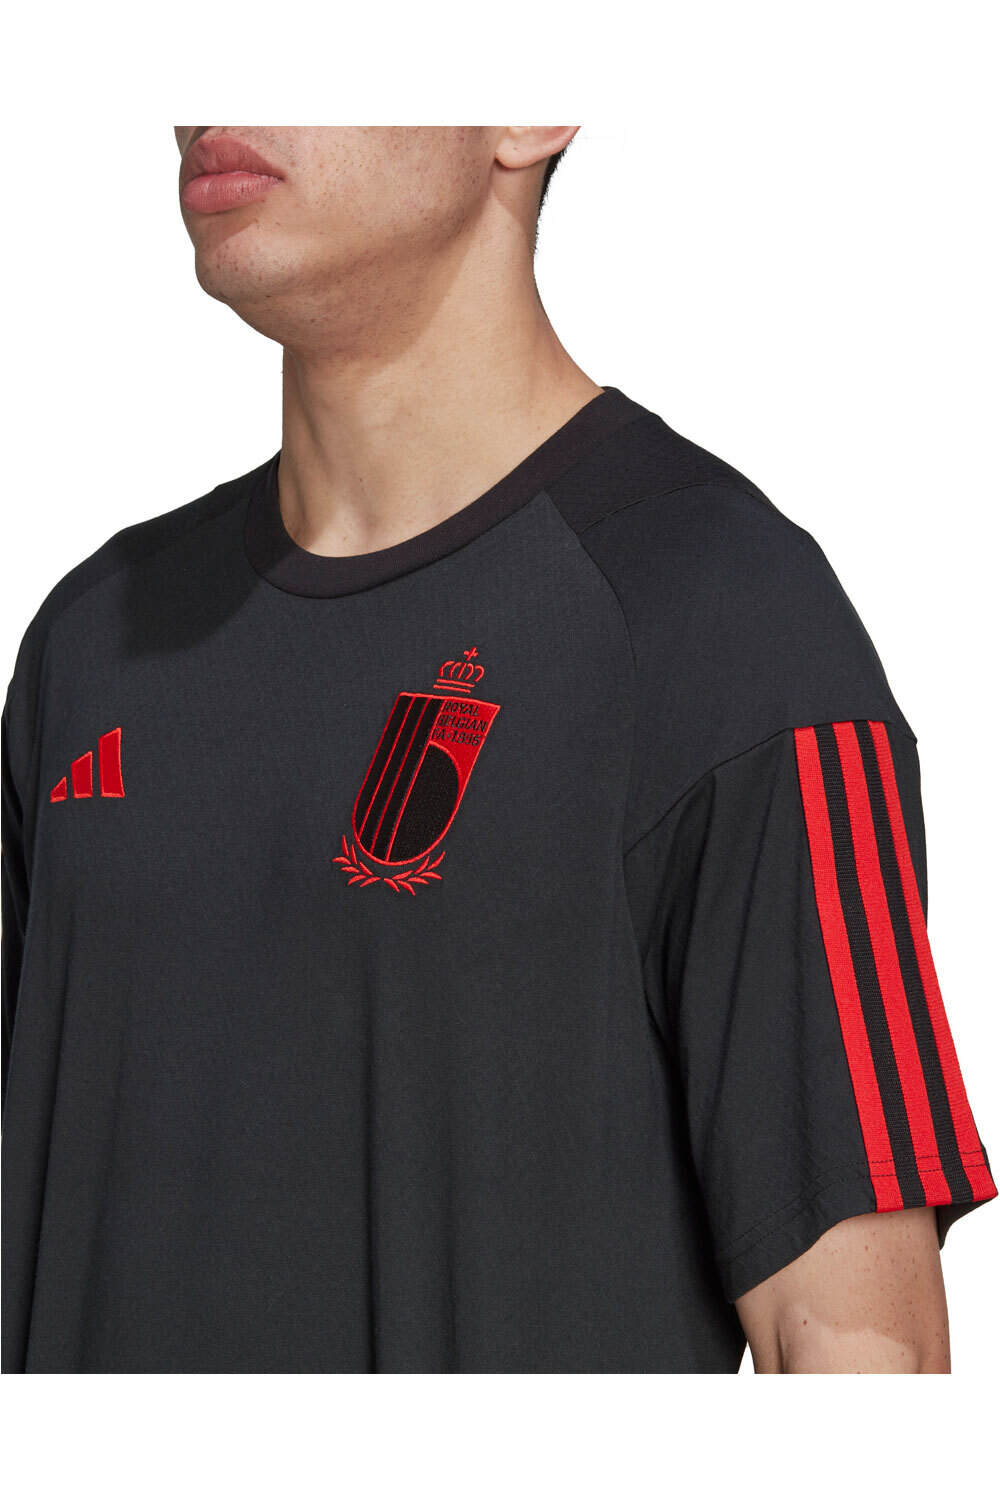 adidas camiseta de fútbol oficiales Belgium Cotton vista detalle